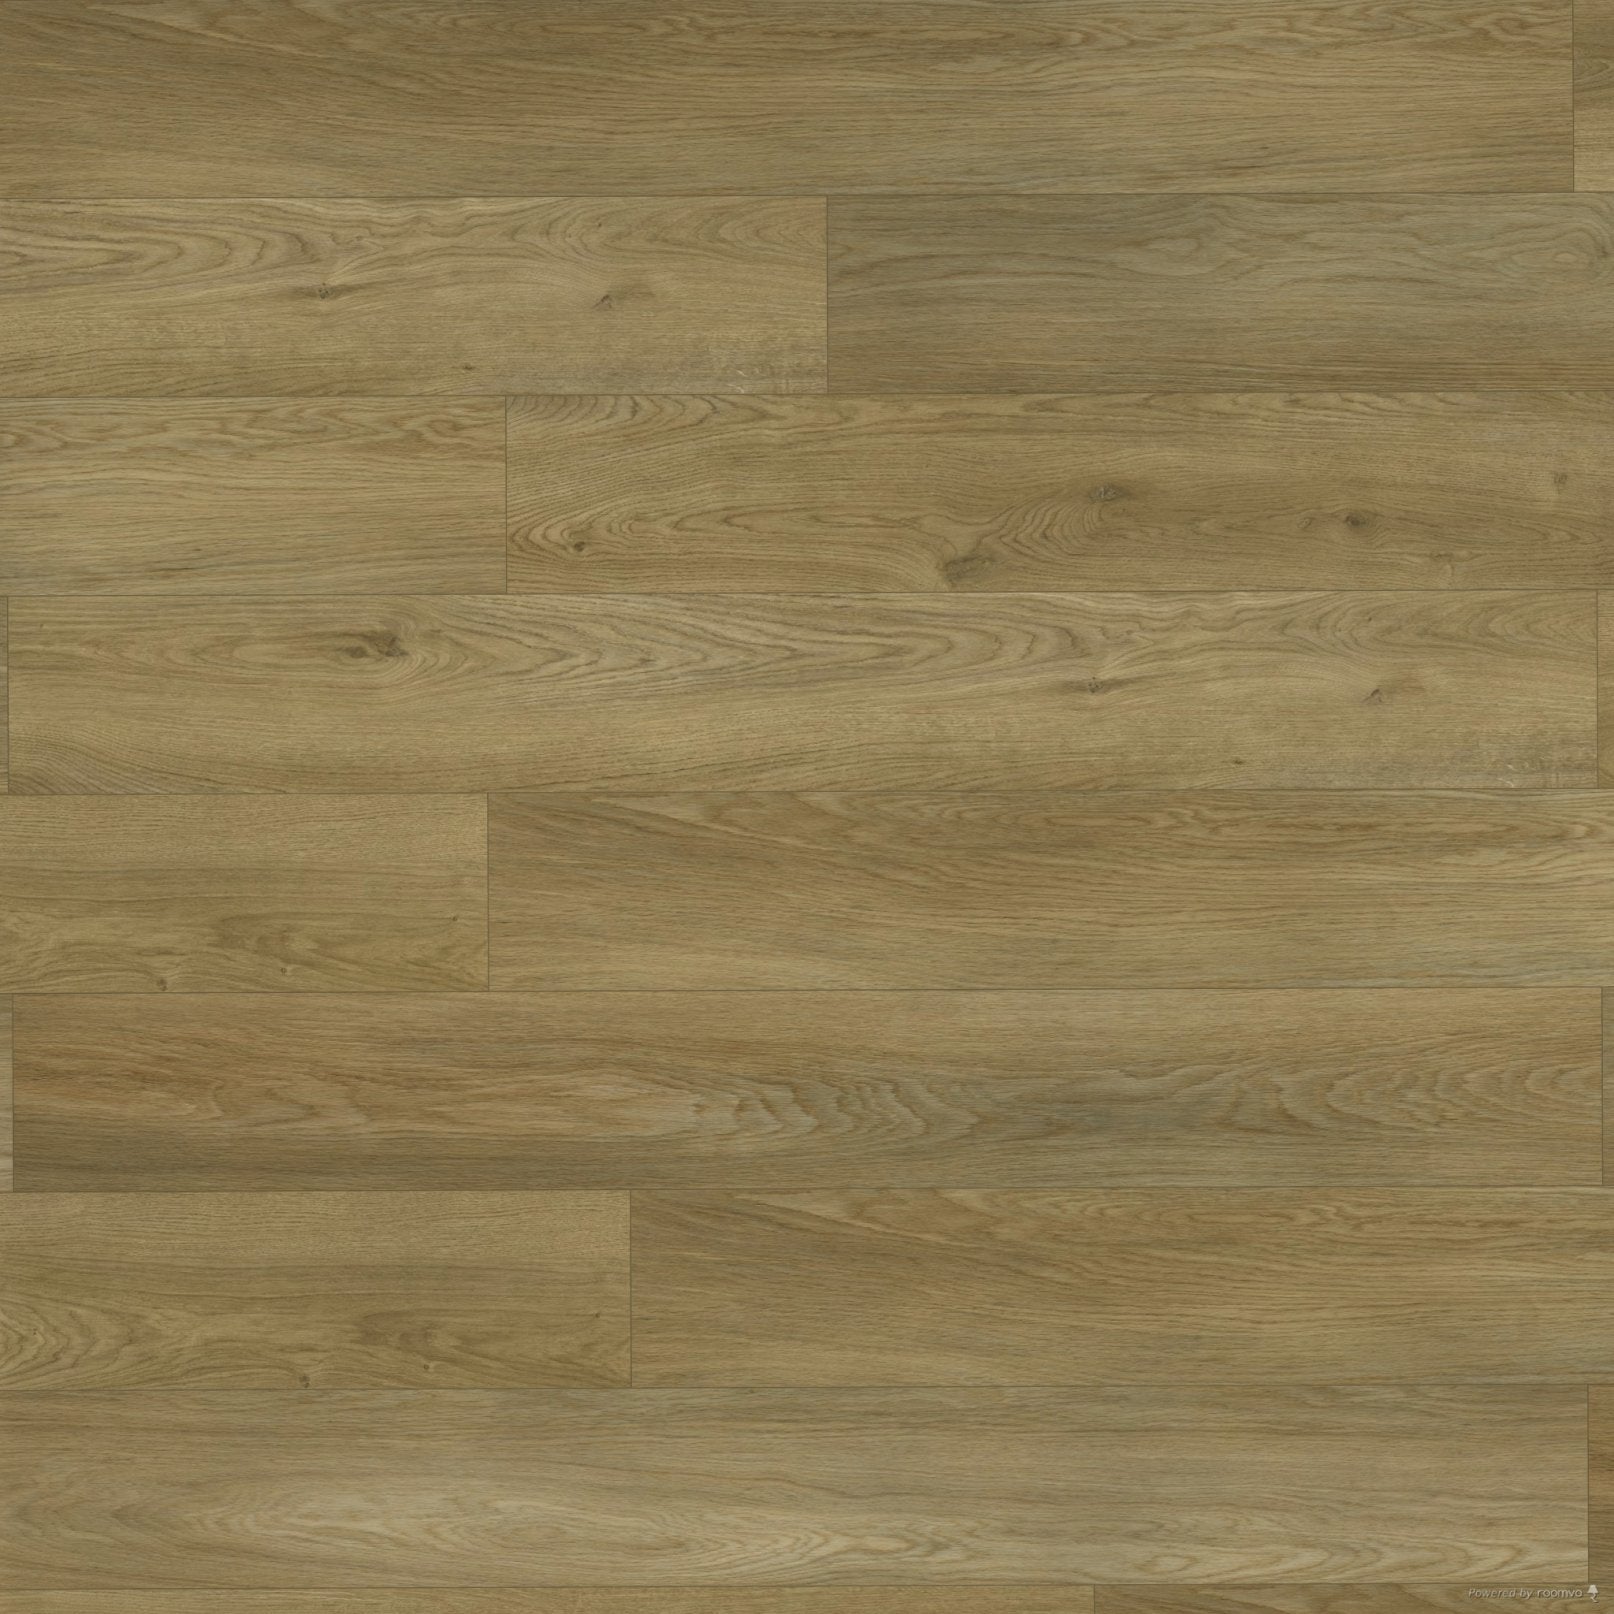 Becki Owens Elite Golden Hewn Stoneform luxury flooring plank swatch